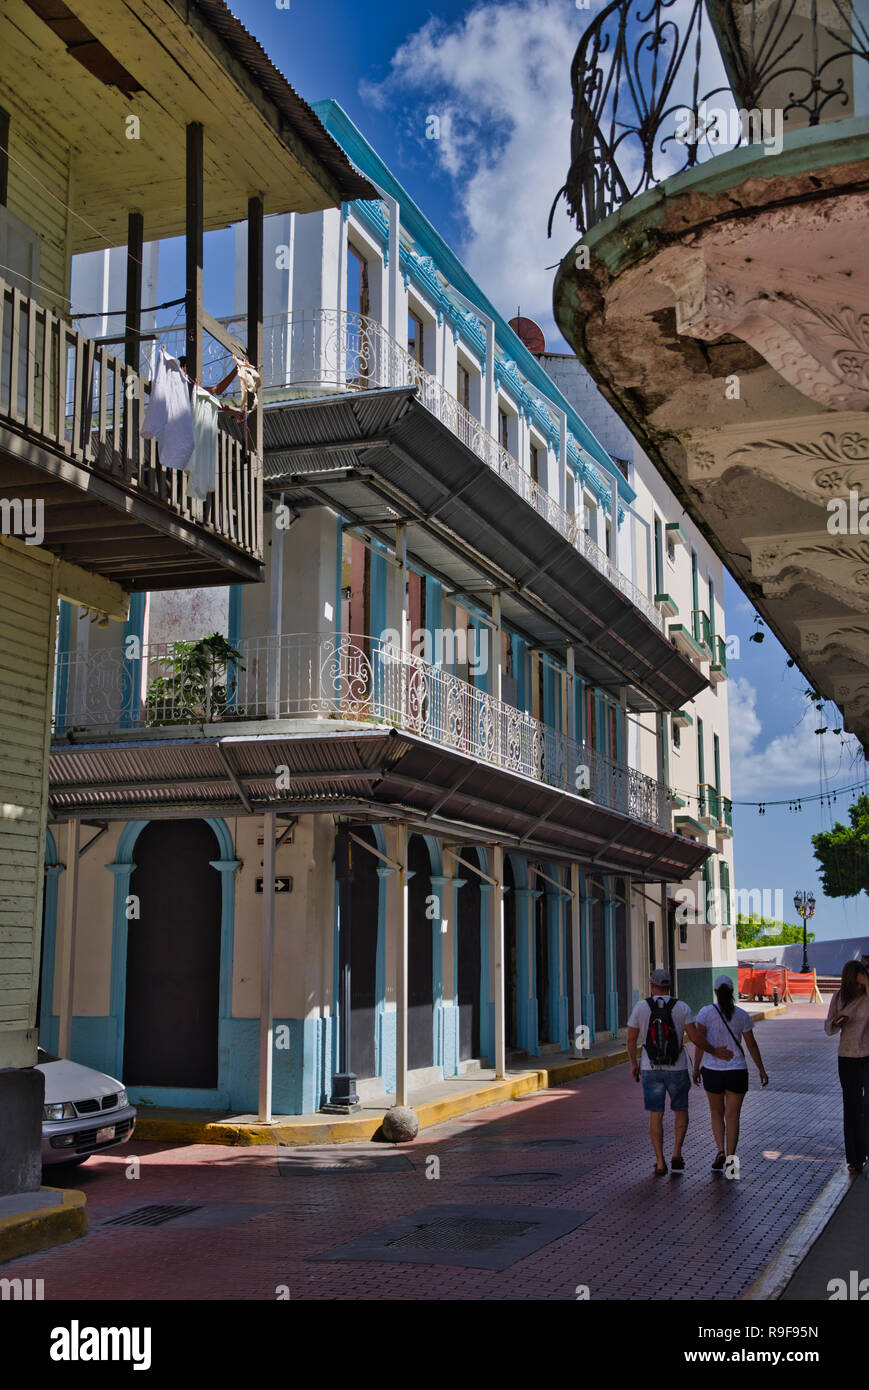 La ville de Panama, Cacso Viejo, scènes de rue, bâtiments de style colonial Banque D'Images